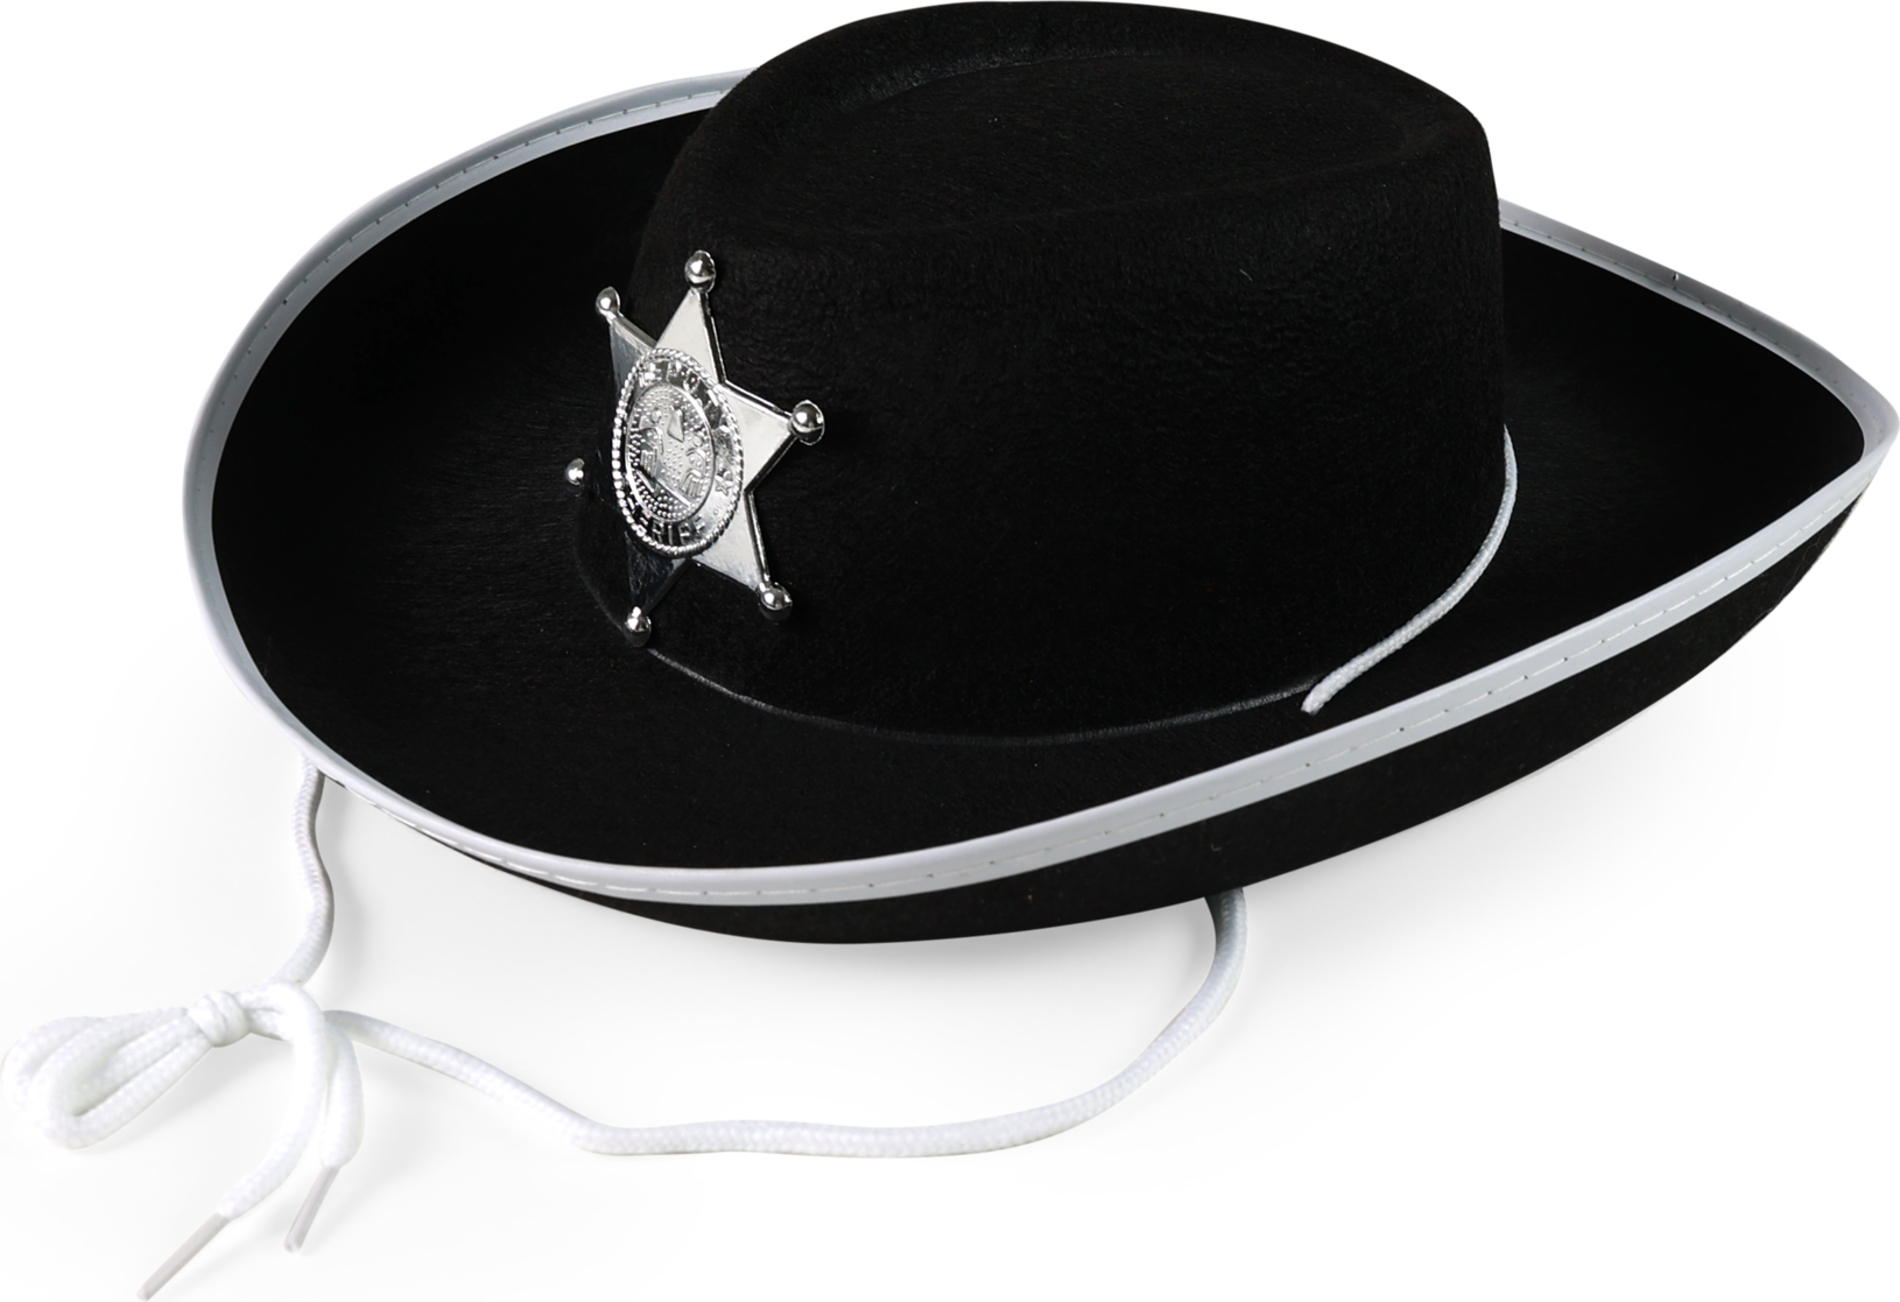 Dětský klobouk černý šerif